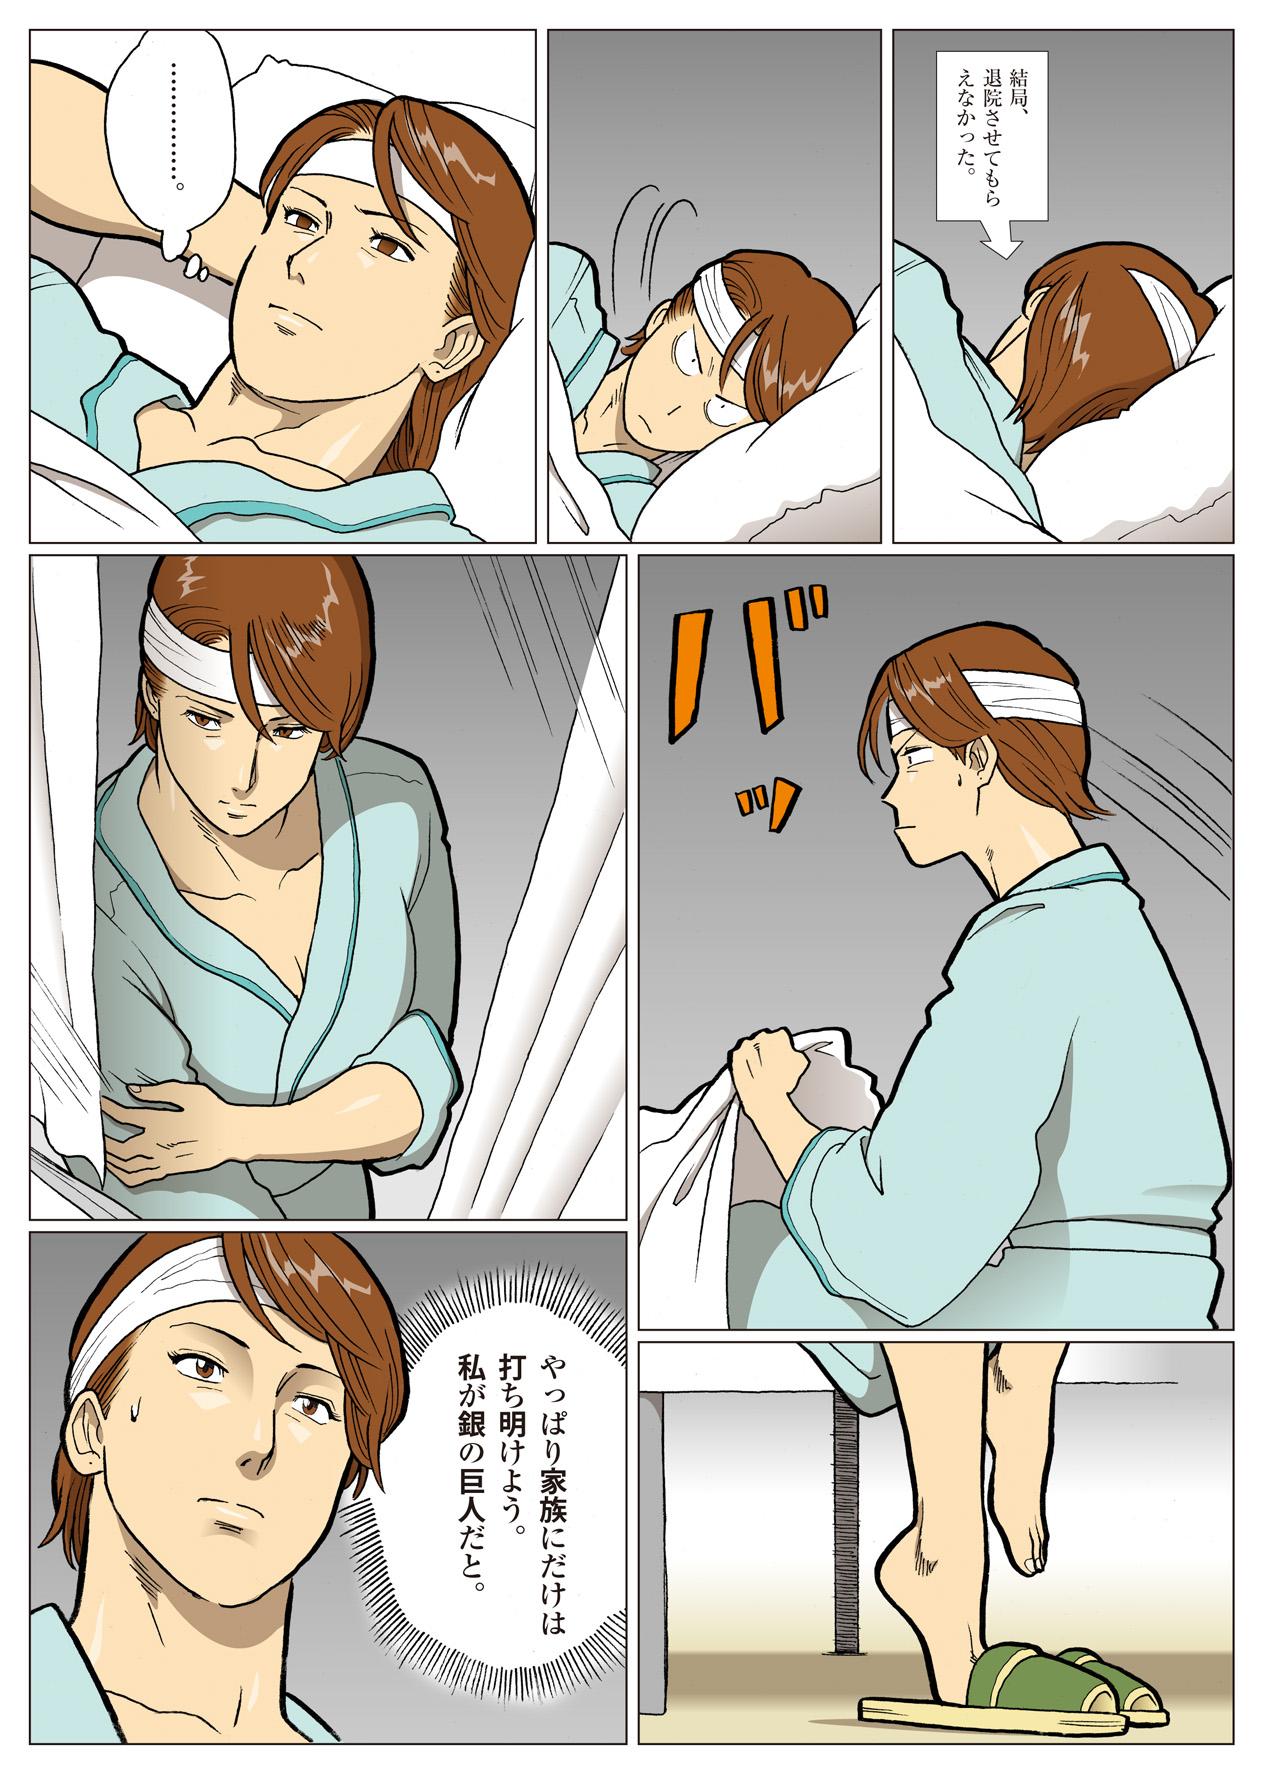 Stockings Mousou Tokusatsu Series: Ultra Madam 6 - Ultraman Girl Fuck - Page 8